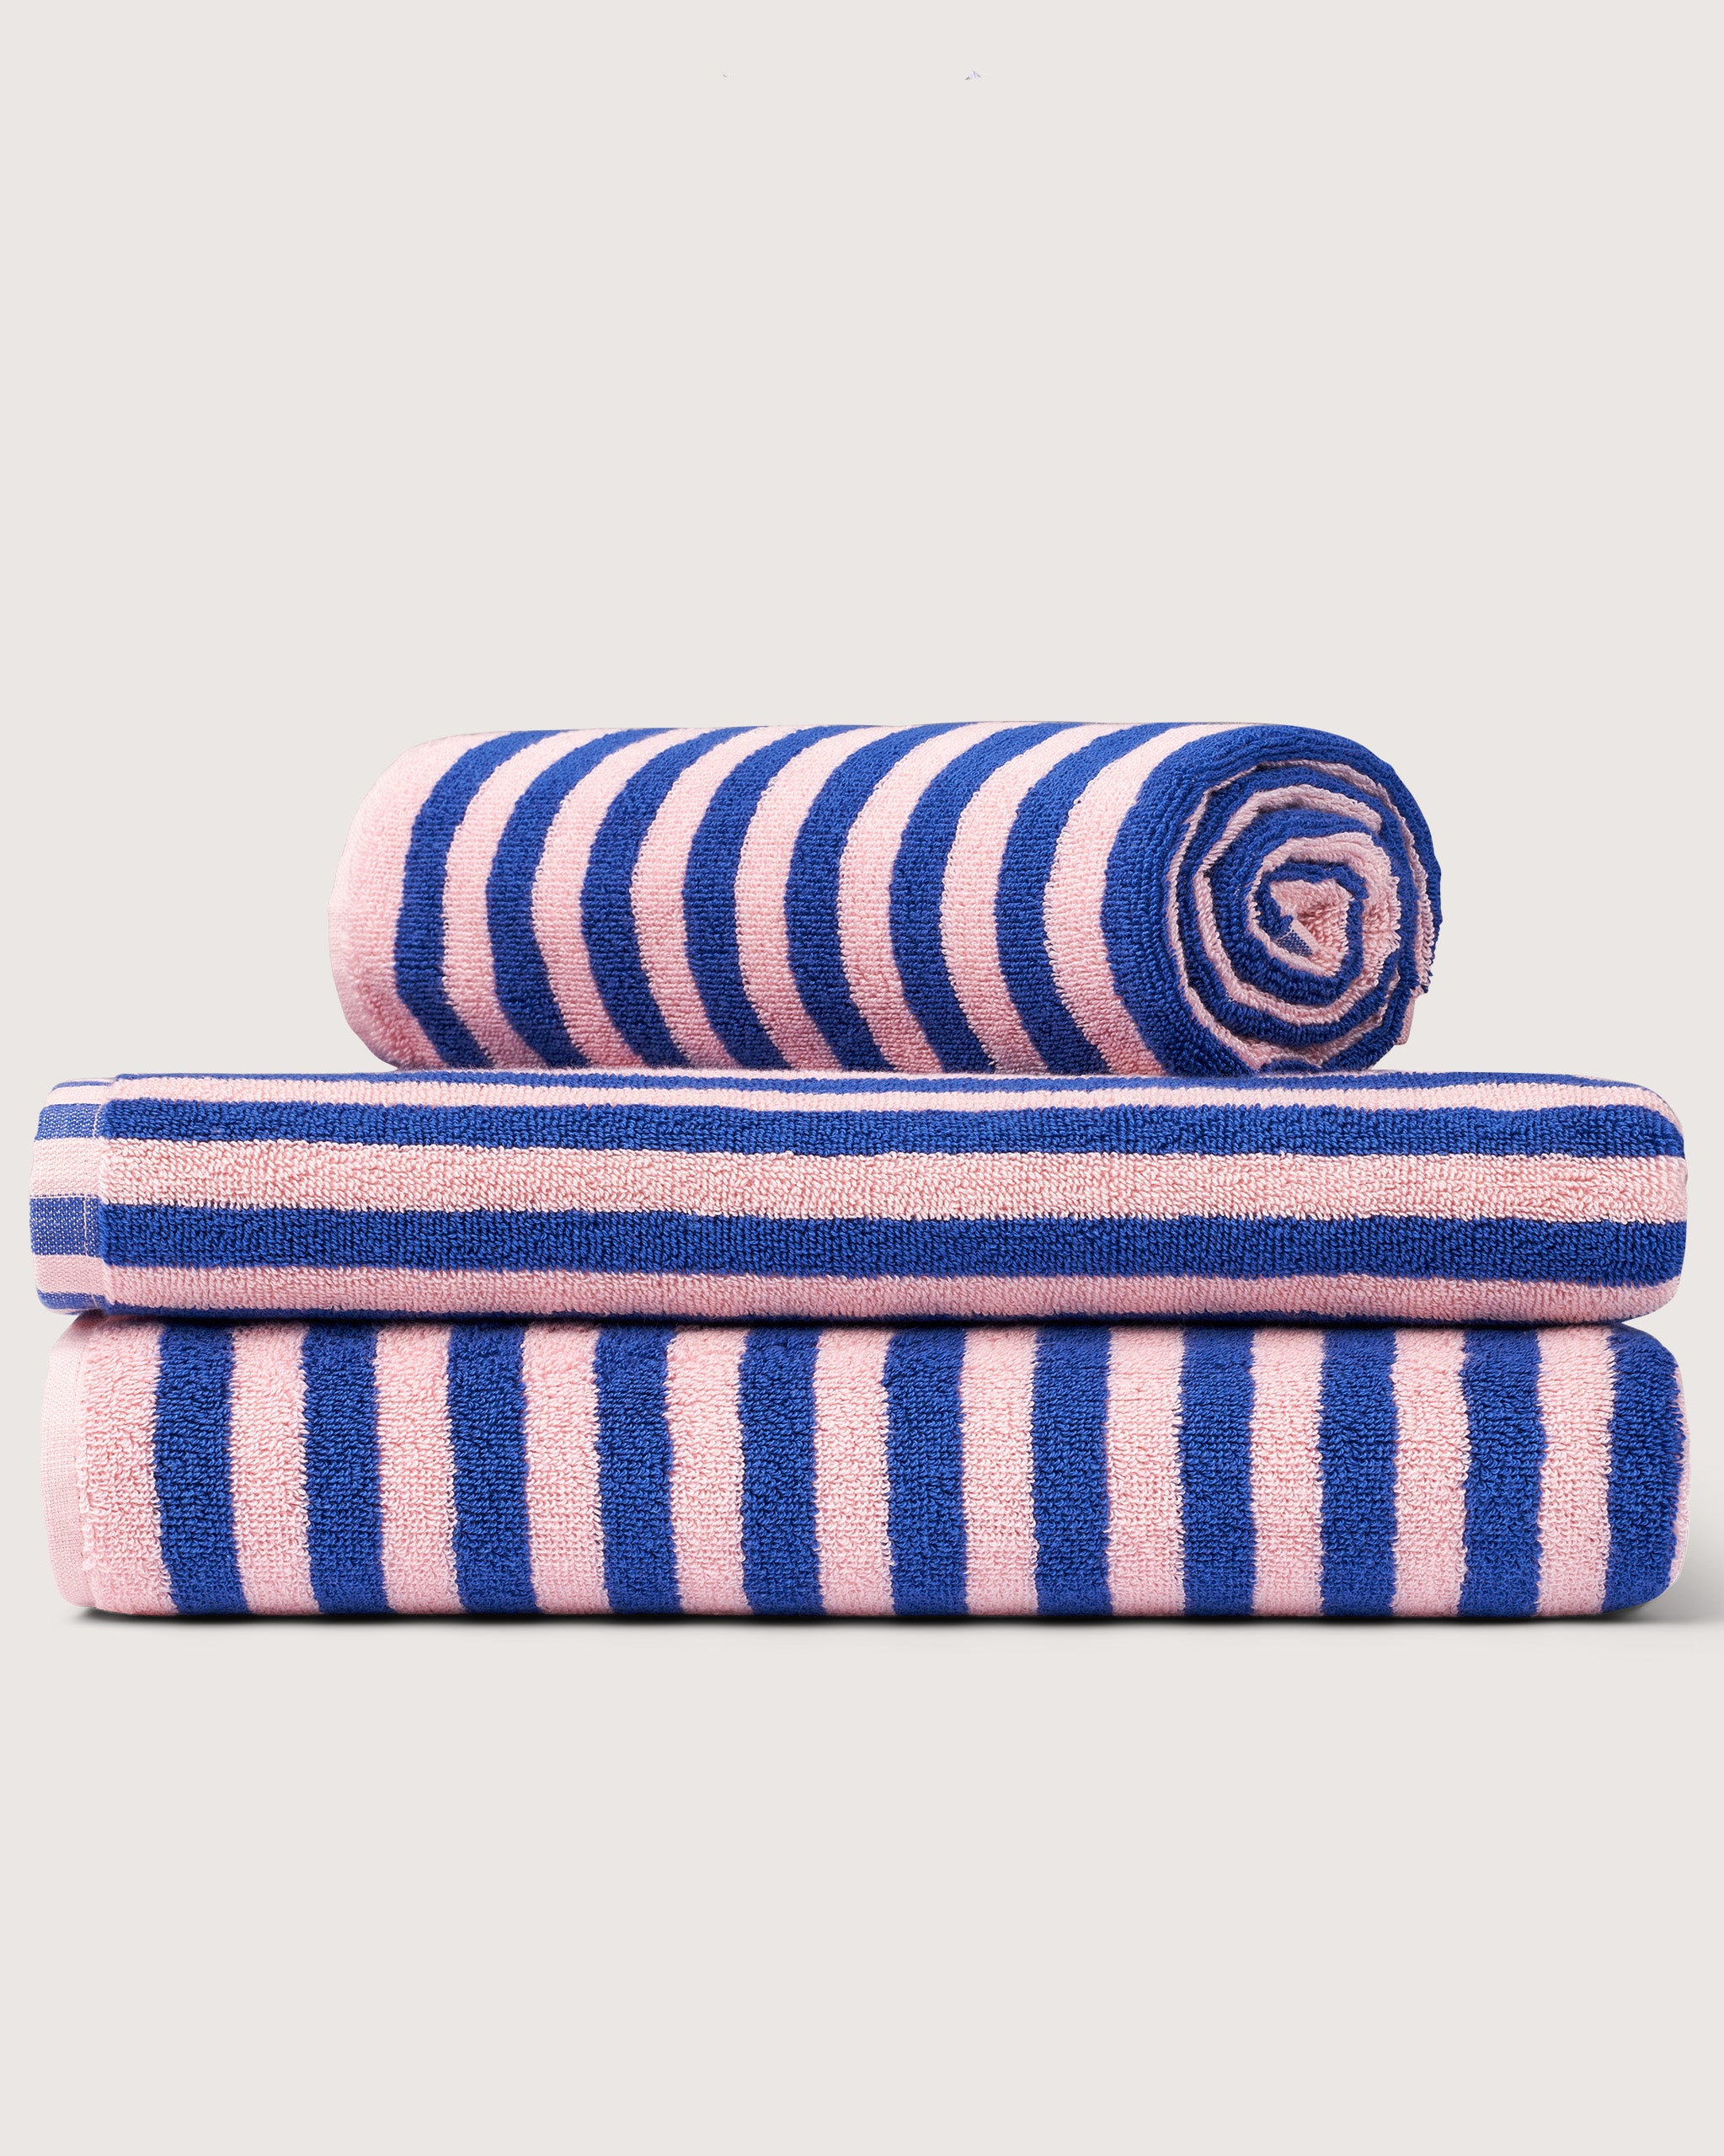 Bongusta, Product image, Naram Towels, dazzling blue & rose, 6 of 6}